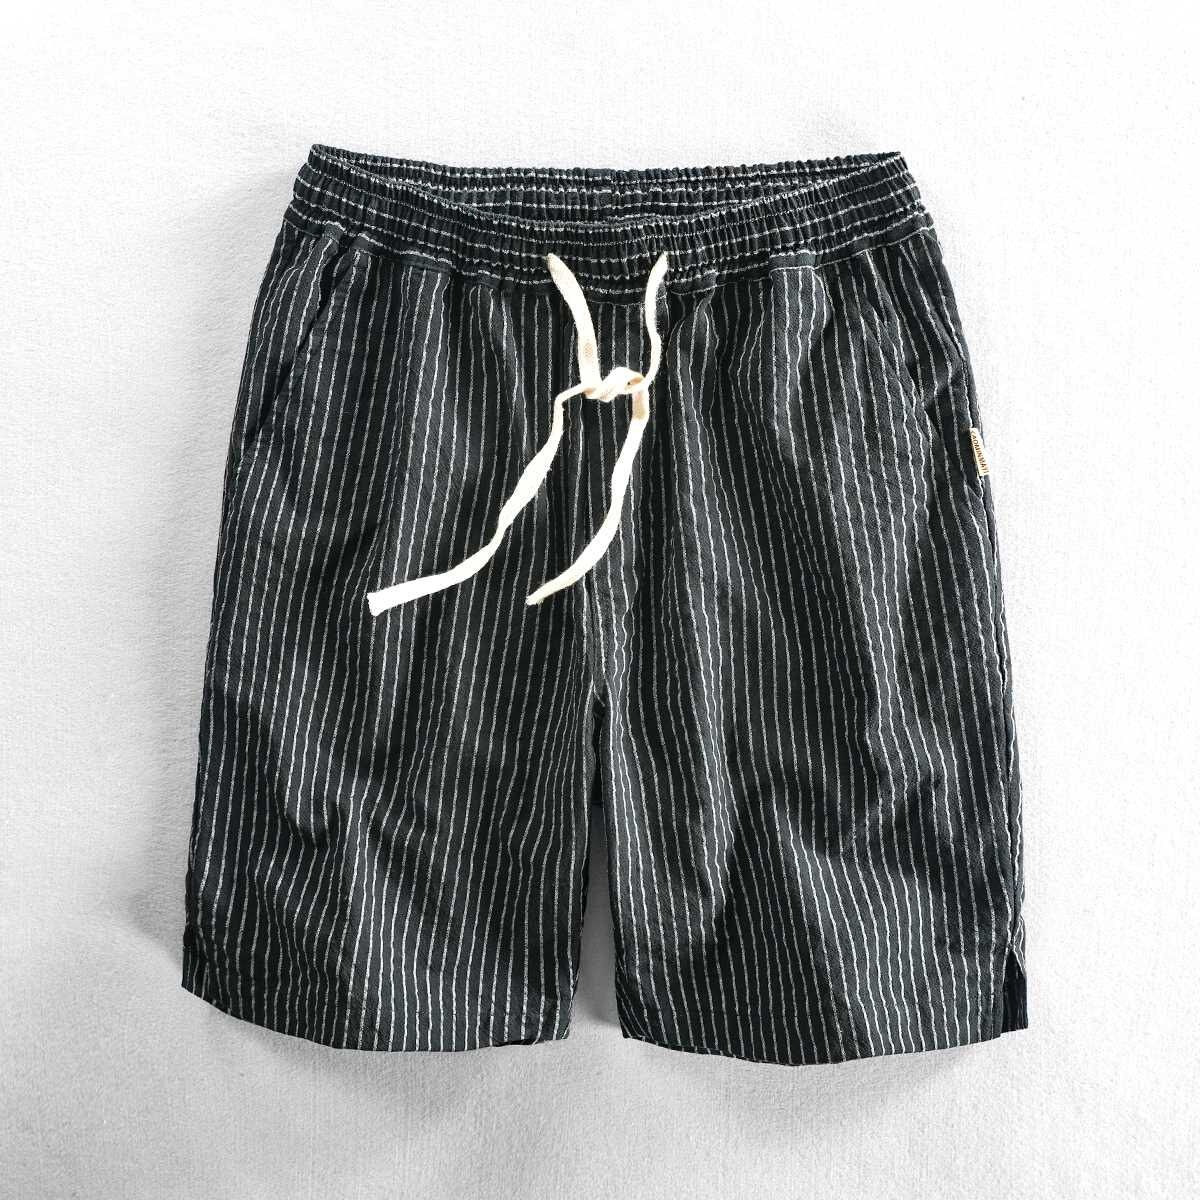 草民麻衣夏季男士休闲短裤条纹运动潮流男裤子系松紧带沙滩五分裤